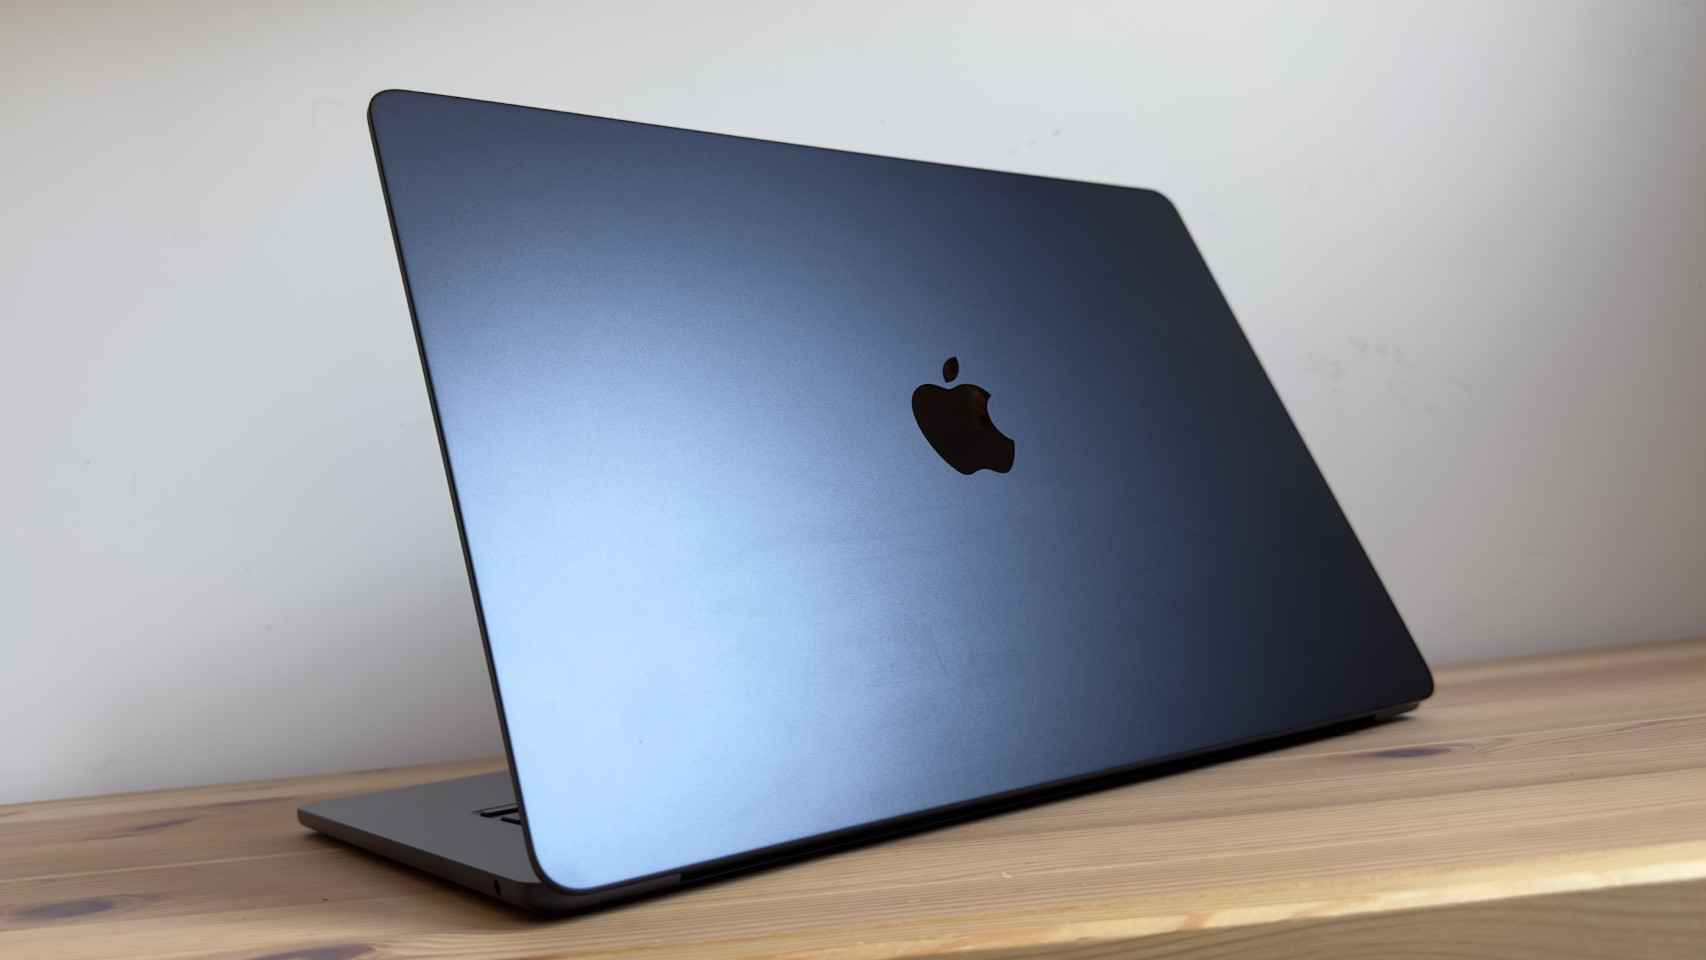 Probamos el MacBook Air de 15 pulgadas, el portátil y delgado con que Apple se ha superado